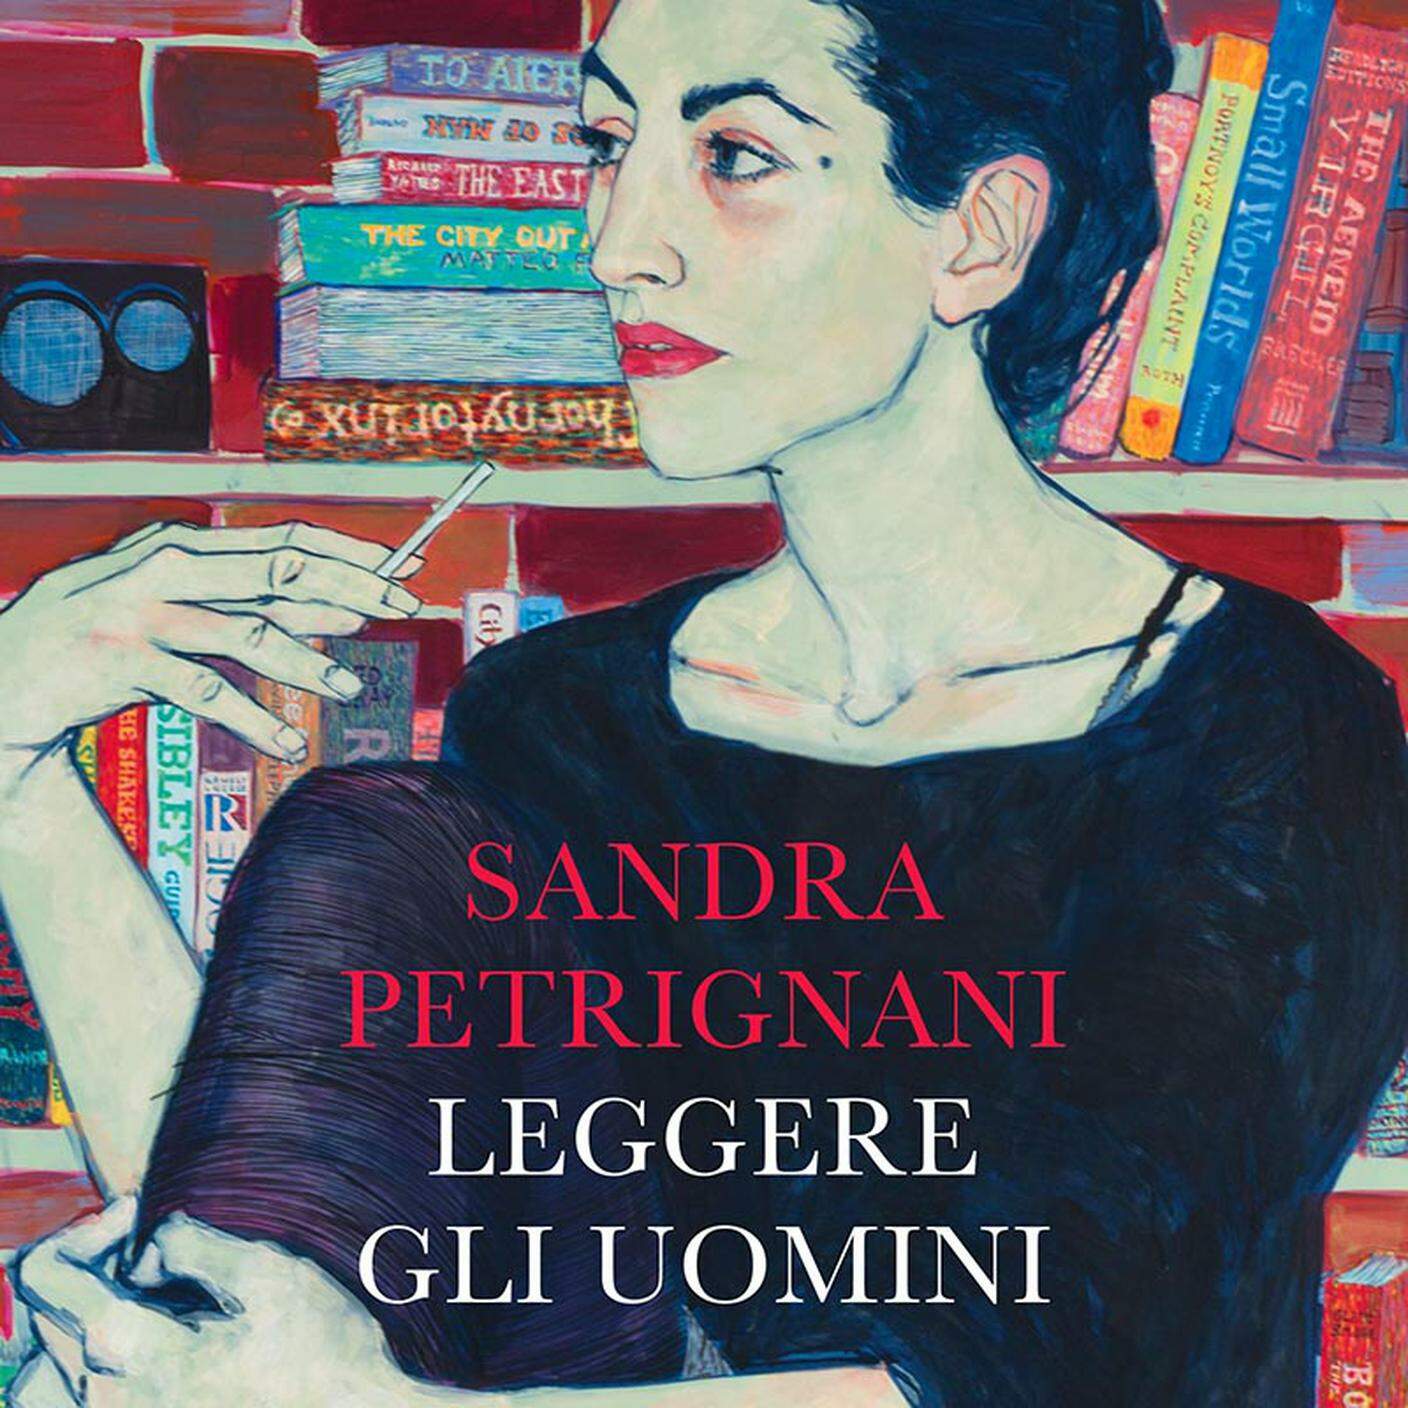 "Leggere gli uomini" di Sandra Petrignani, Laterza (dettaglio di copertina)